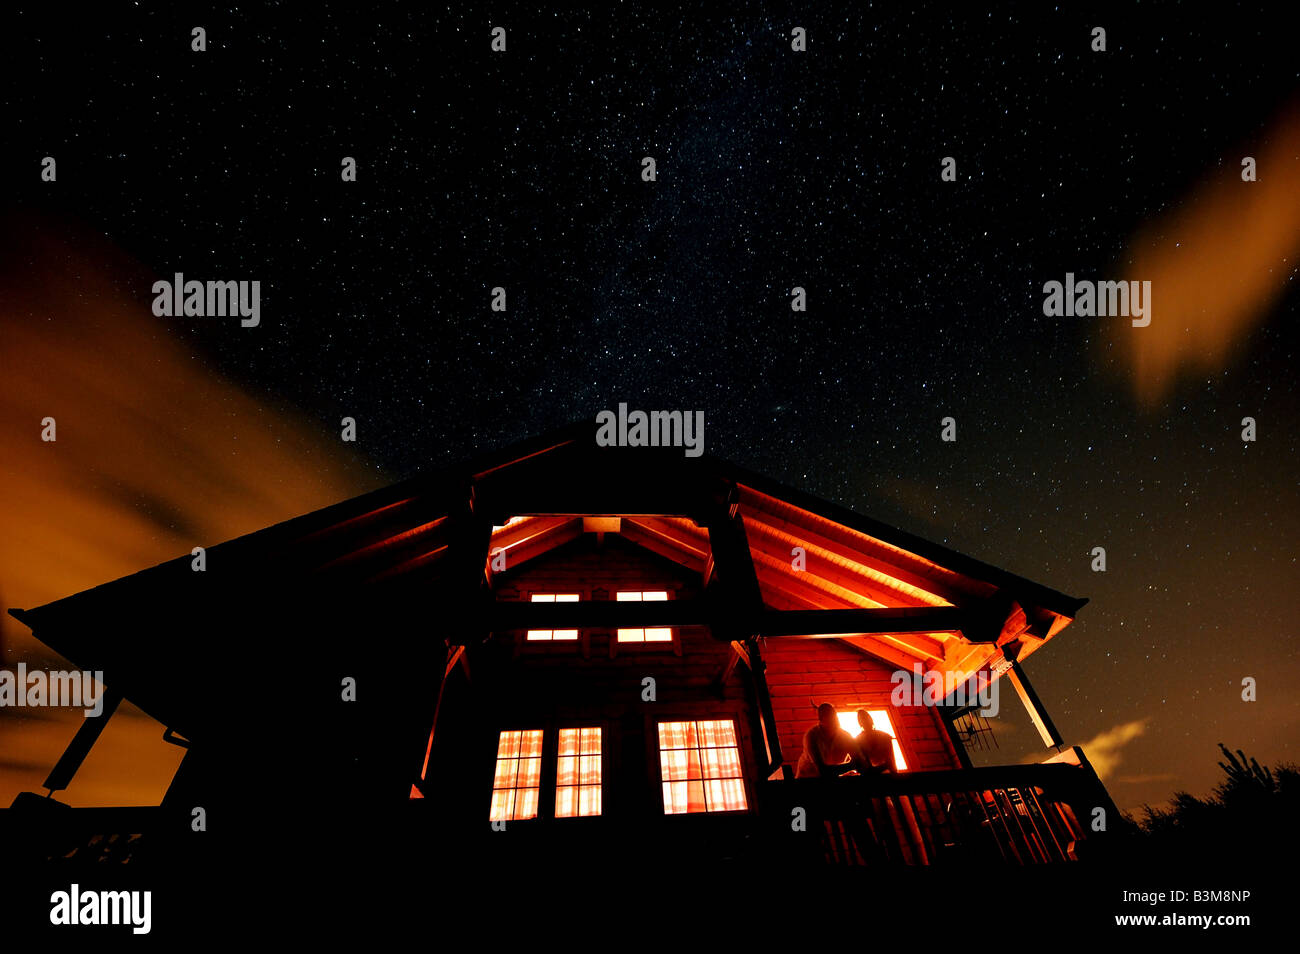 La Via Lattea si estende in alto al di sopra di un Log Cabin come due residenti ammirare il suggestivo del cielo notturno sopra,Inverness Scozia Scotland Foto Stock